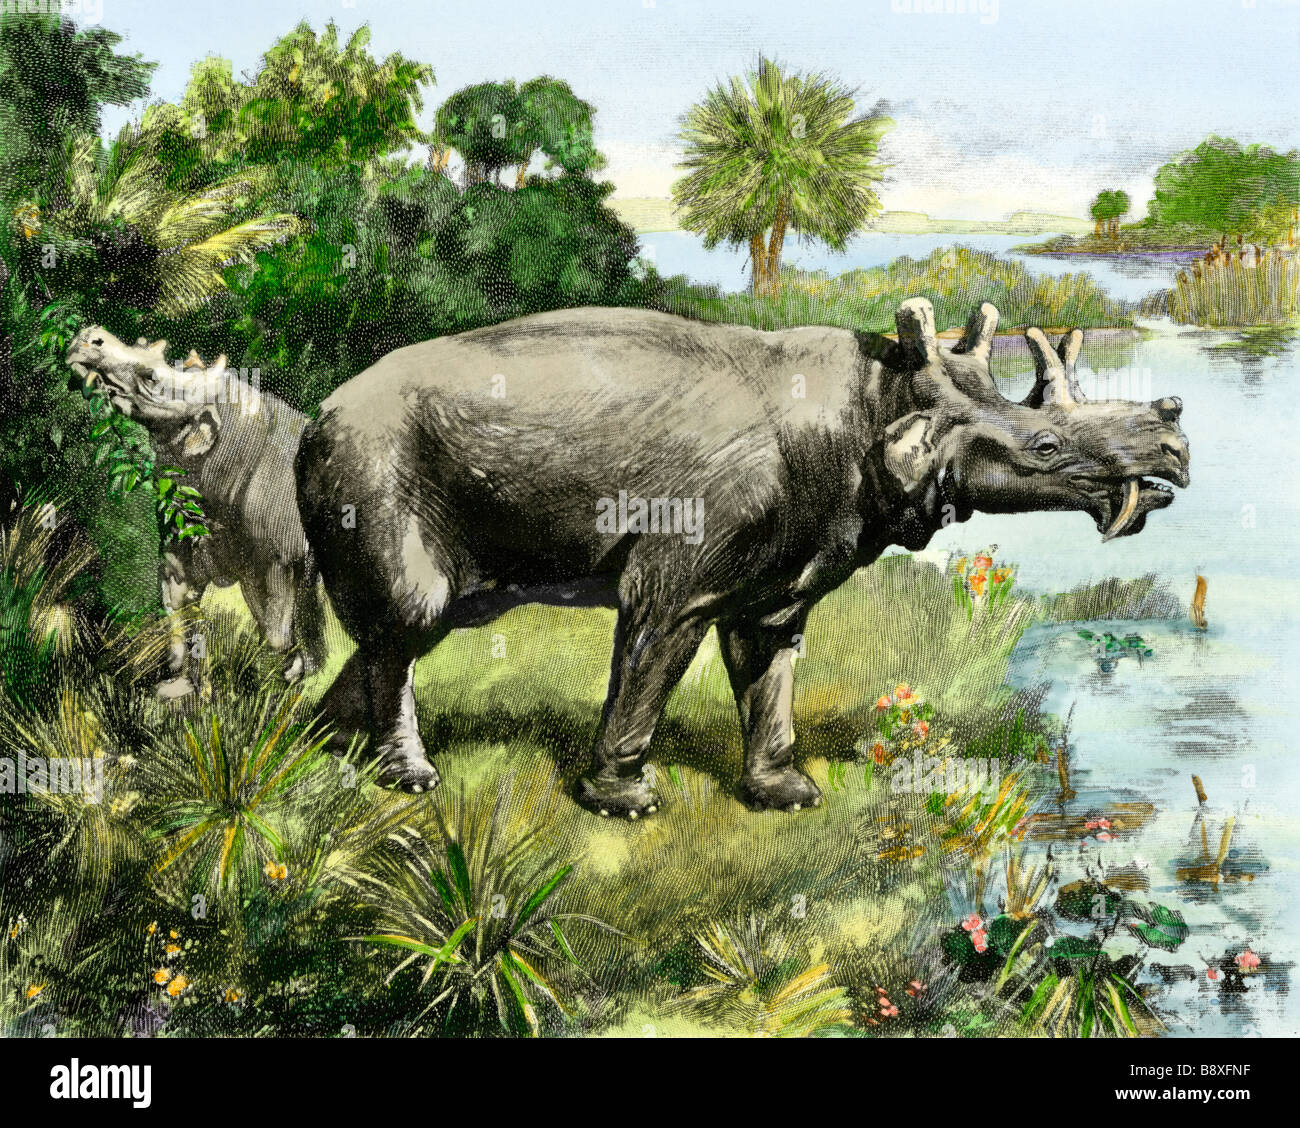 Uintathere, eine ausgestorbene Spezies von Rhinoceros alten Wyoming und Utah. Hand - farbige Raster eines Charles Knight Abbildung Stockfoto